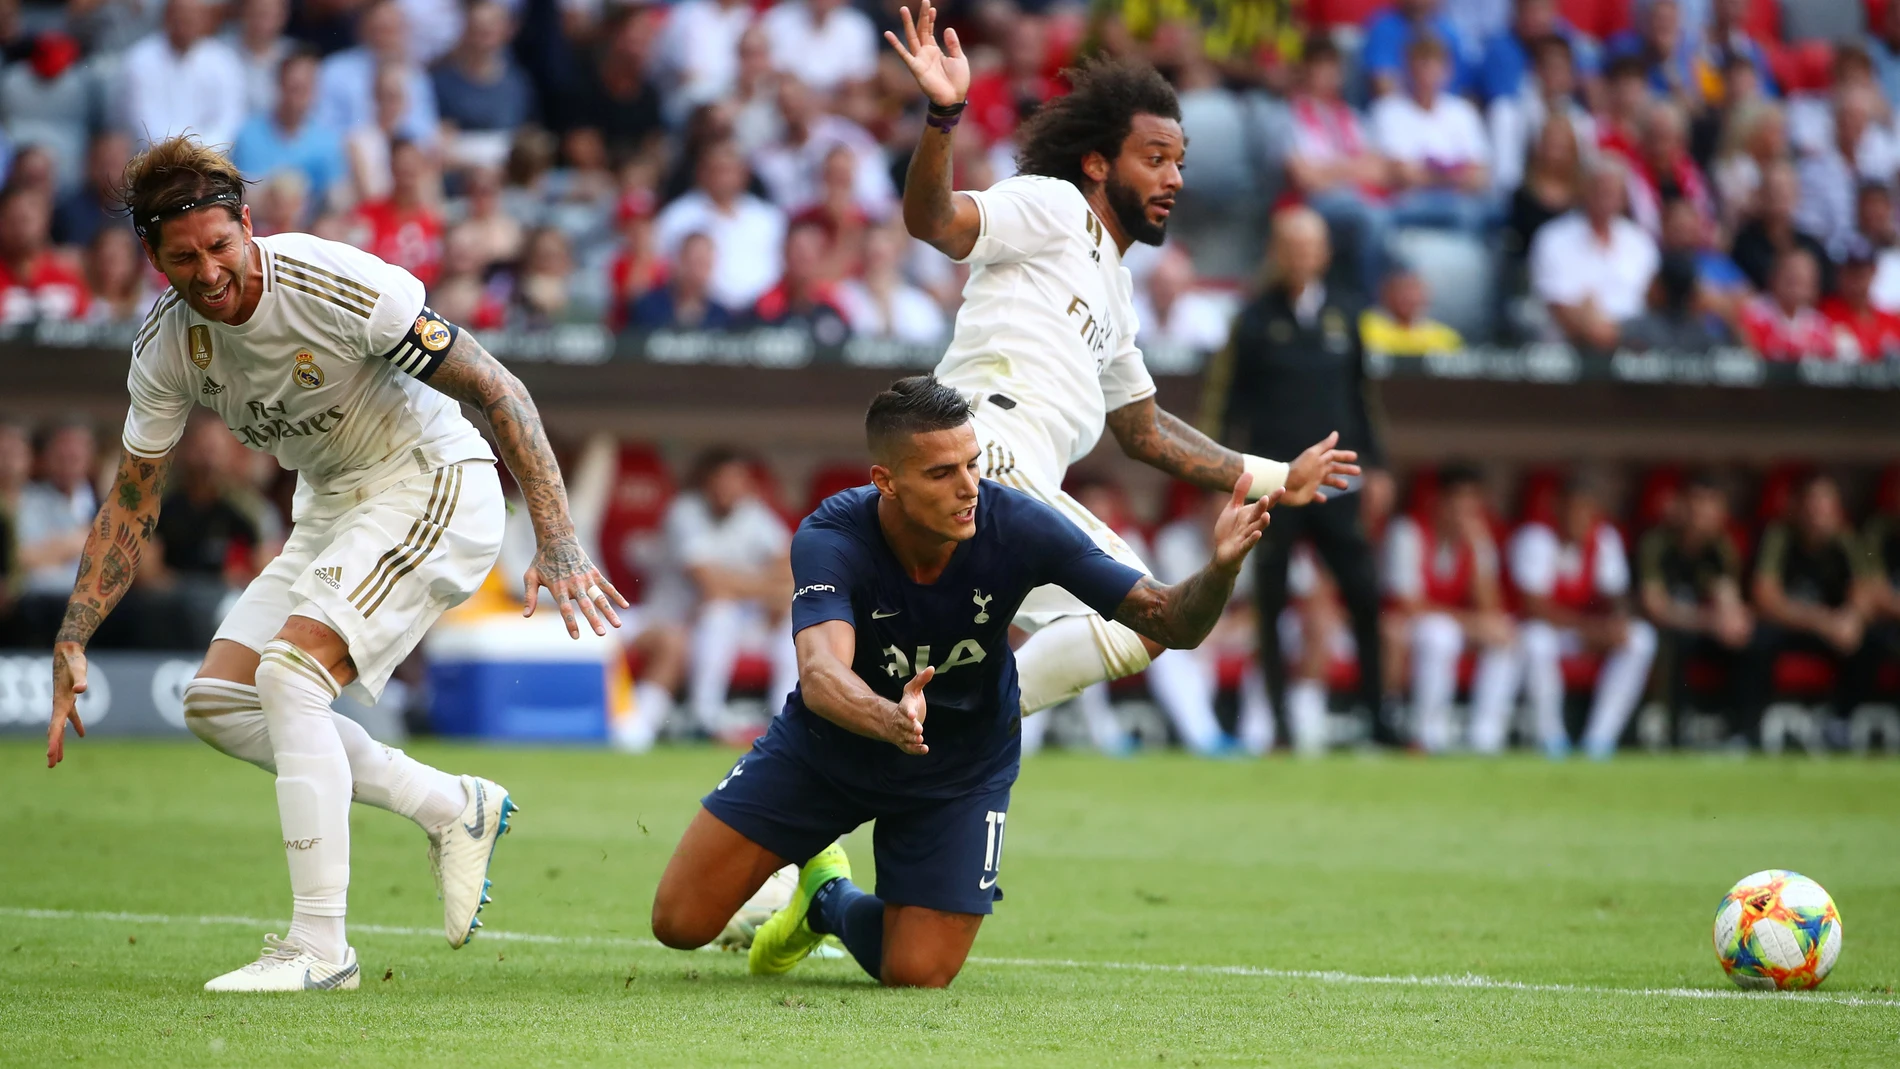 Momento del partido entre Real Madrid y Tottenham